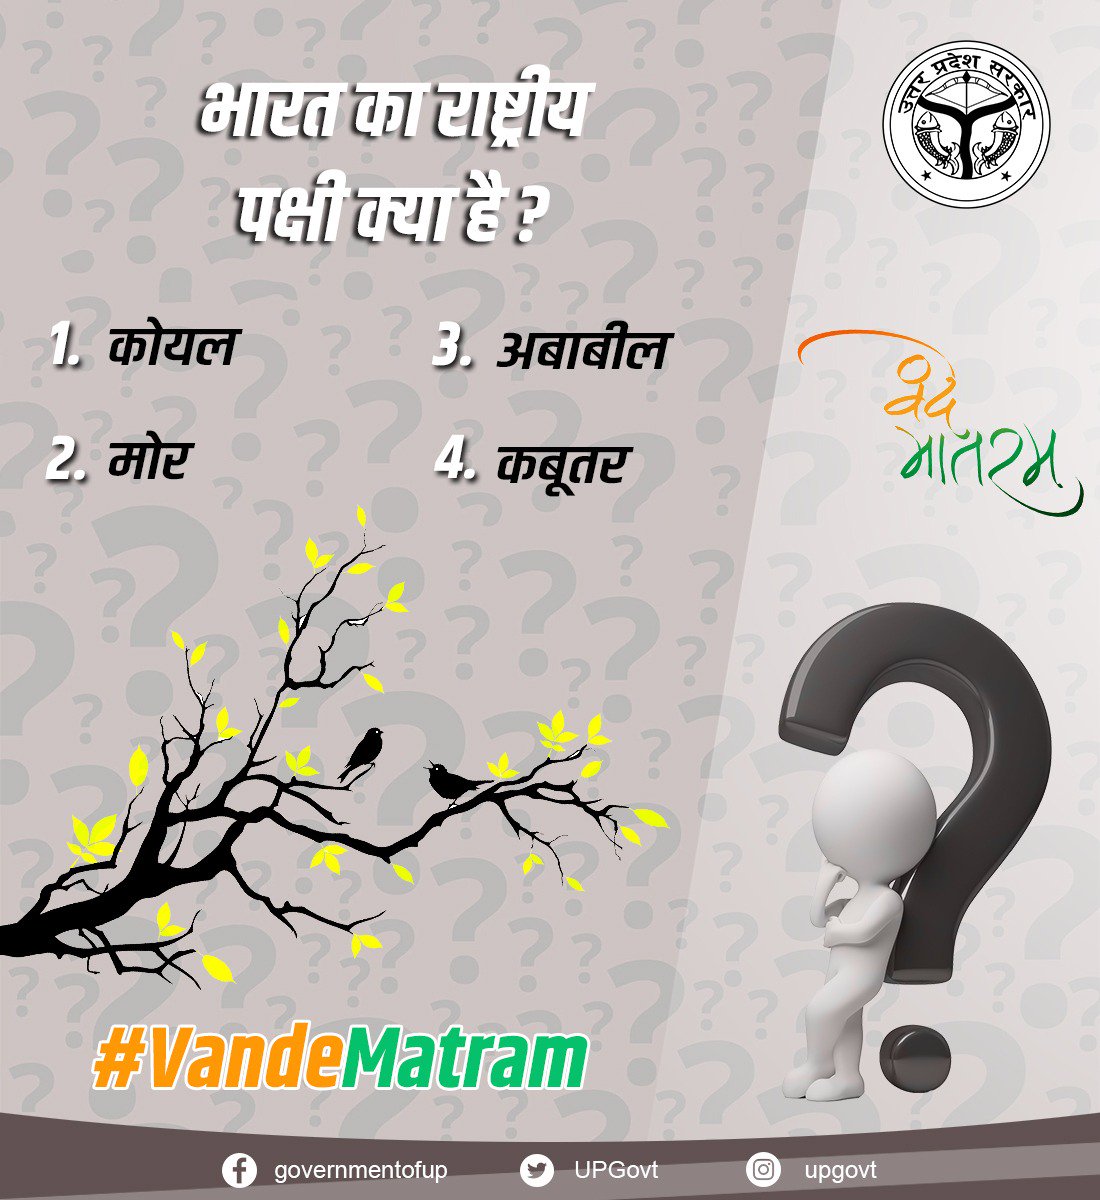 प्रश्न उत्तर श्रृंखला सवाल-9 भारत का राष्ट्रीय पक्षी क्या है? कमेंट बॉक्स में जवाब दें... #VandeMatram #jaiho #IndependenceDay